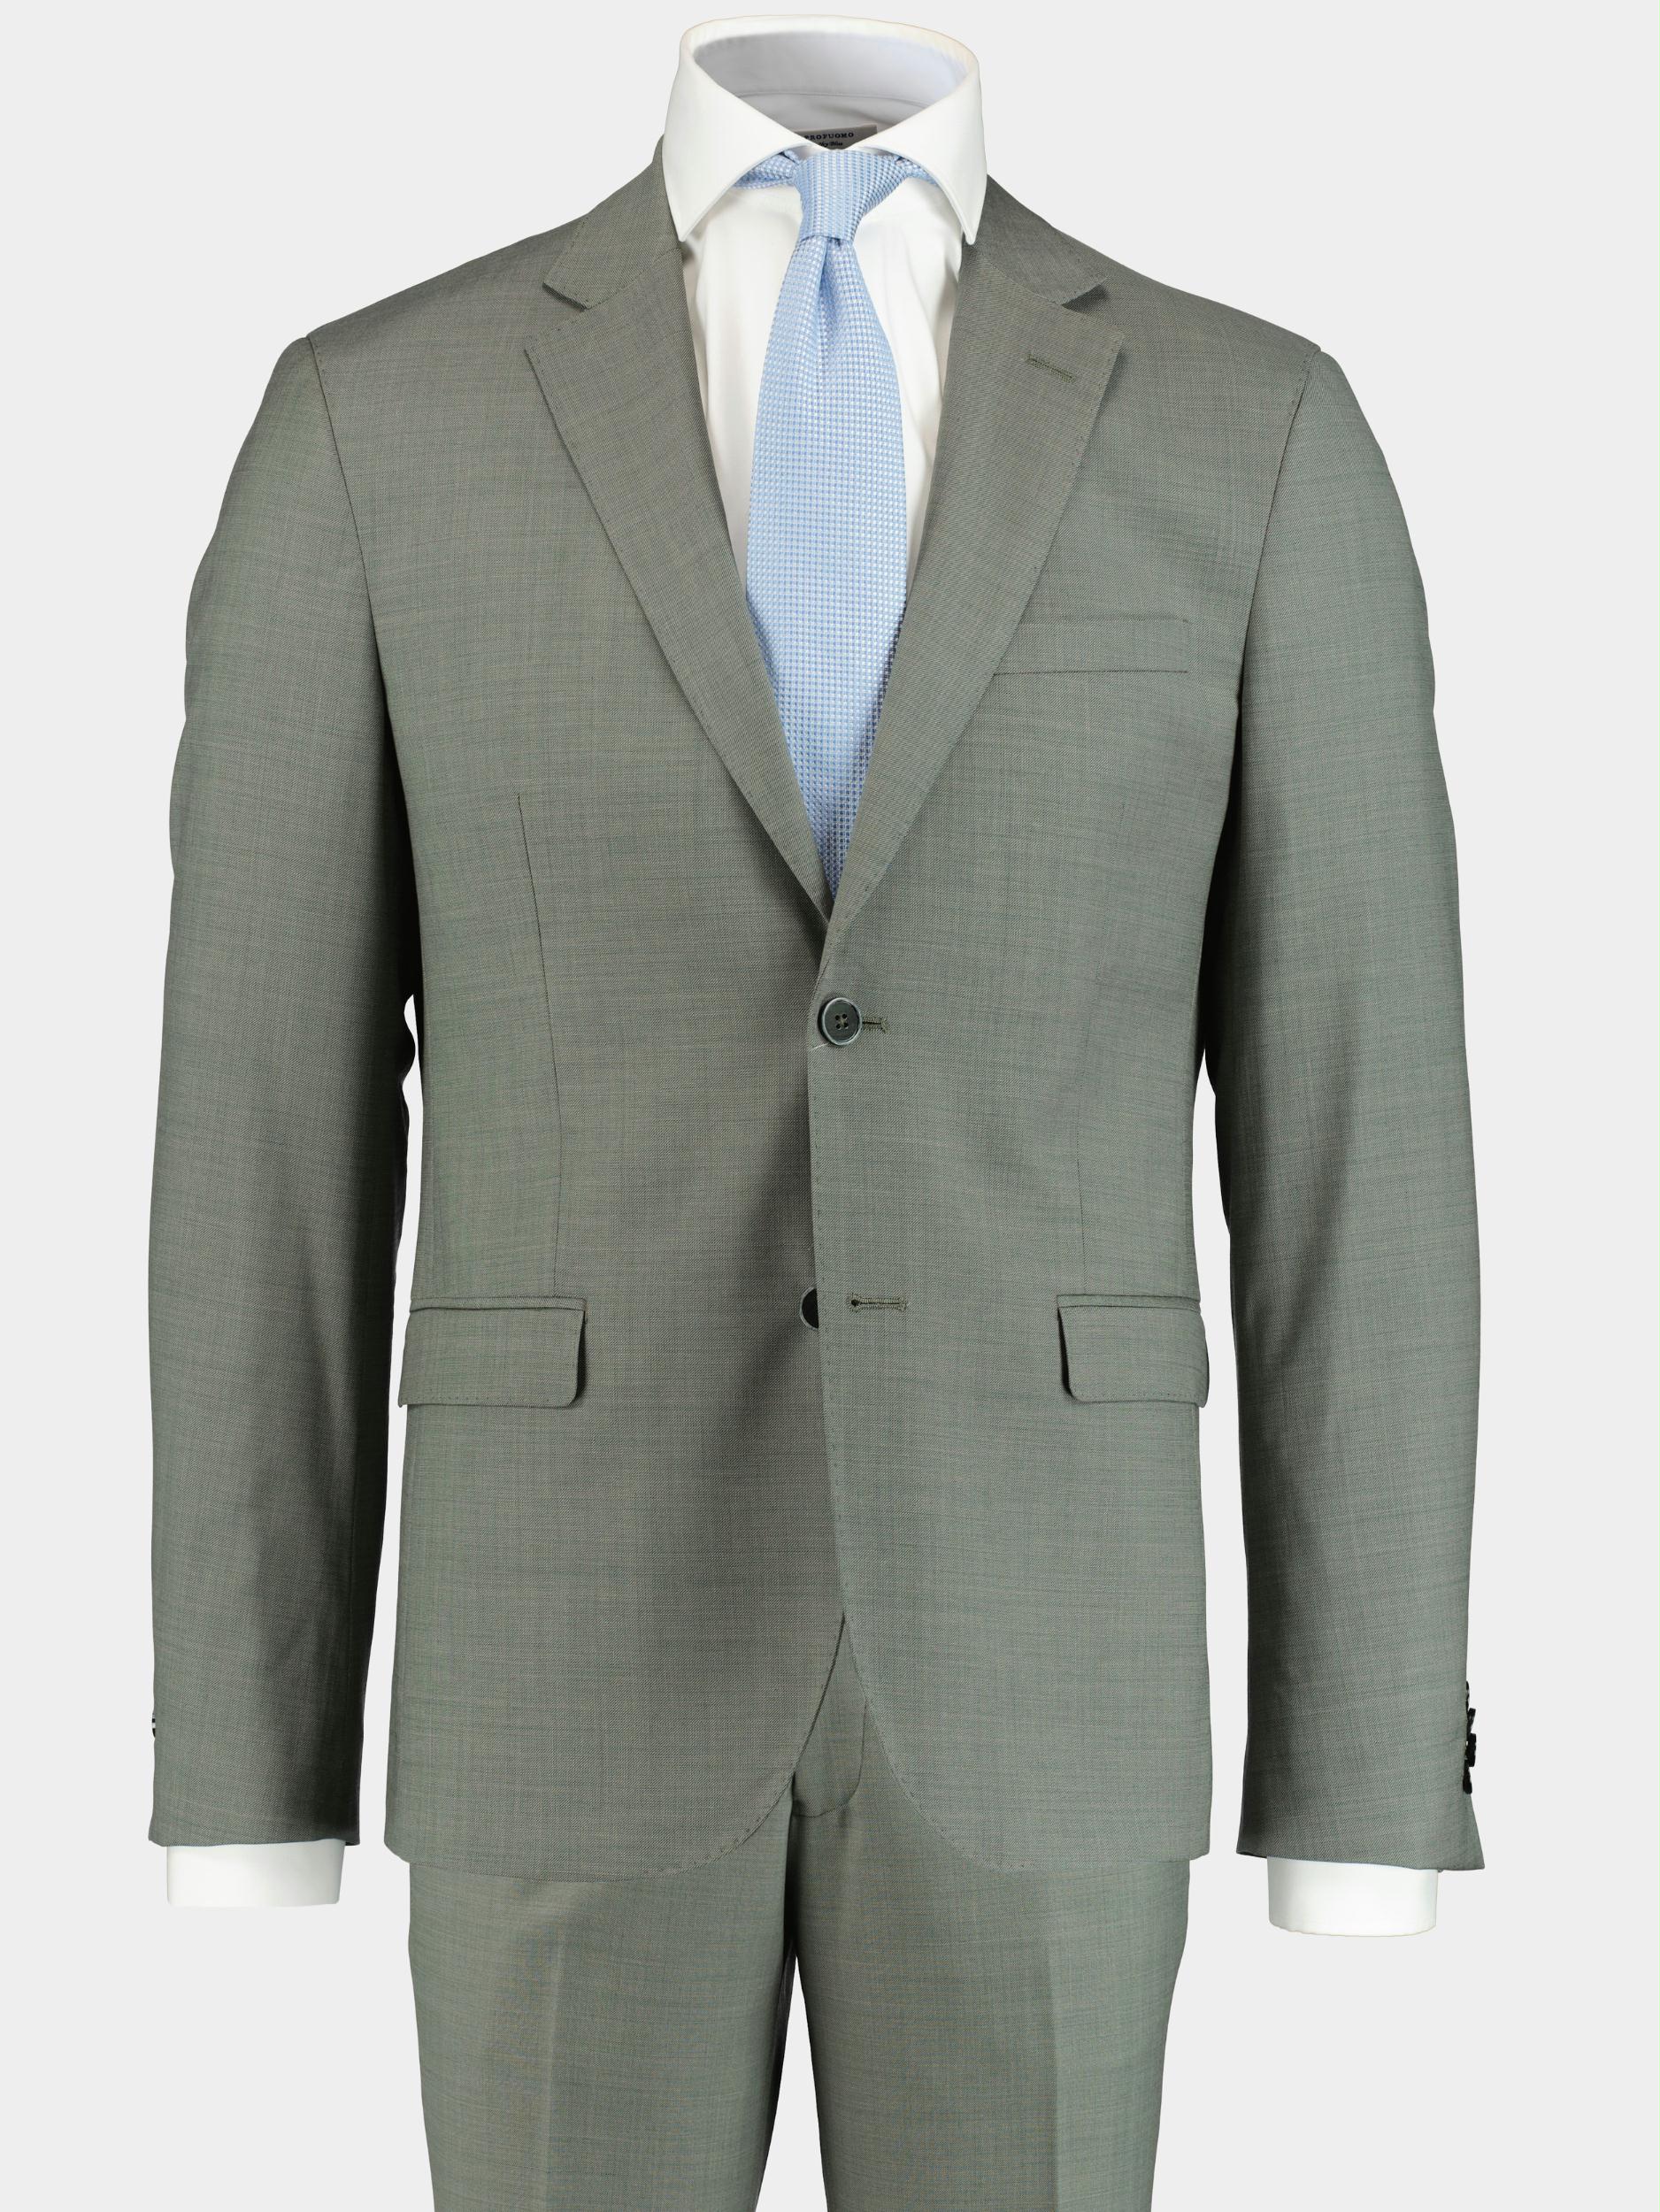 Bos Bright Blue Kostuum Groen Toulon Suit Drop 8 221028TO12SB/368 Olive